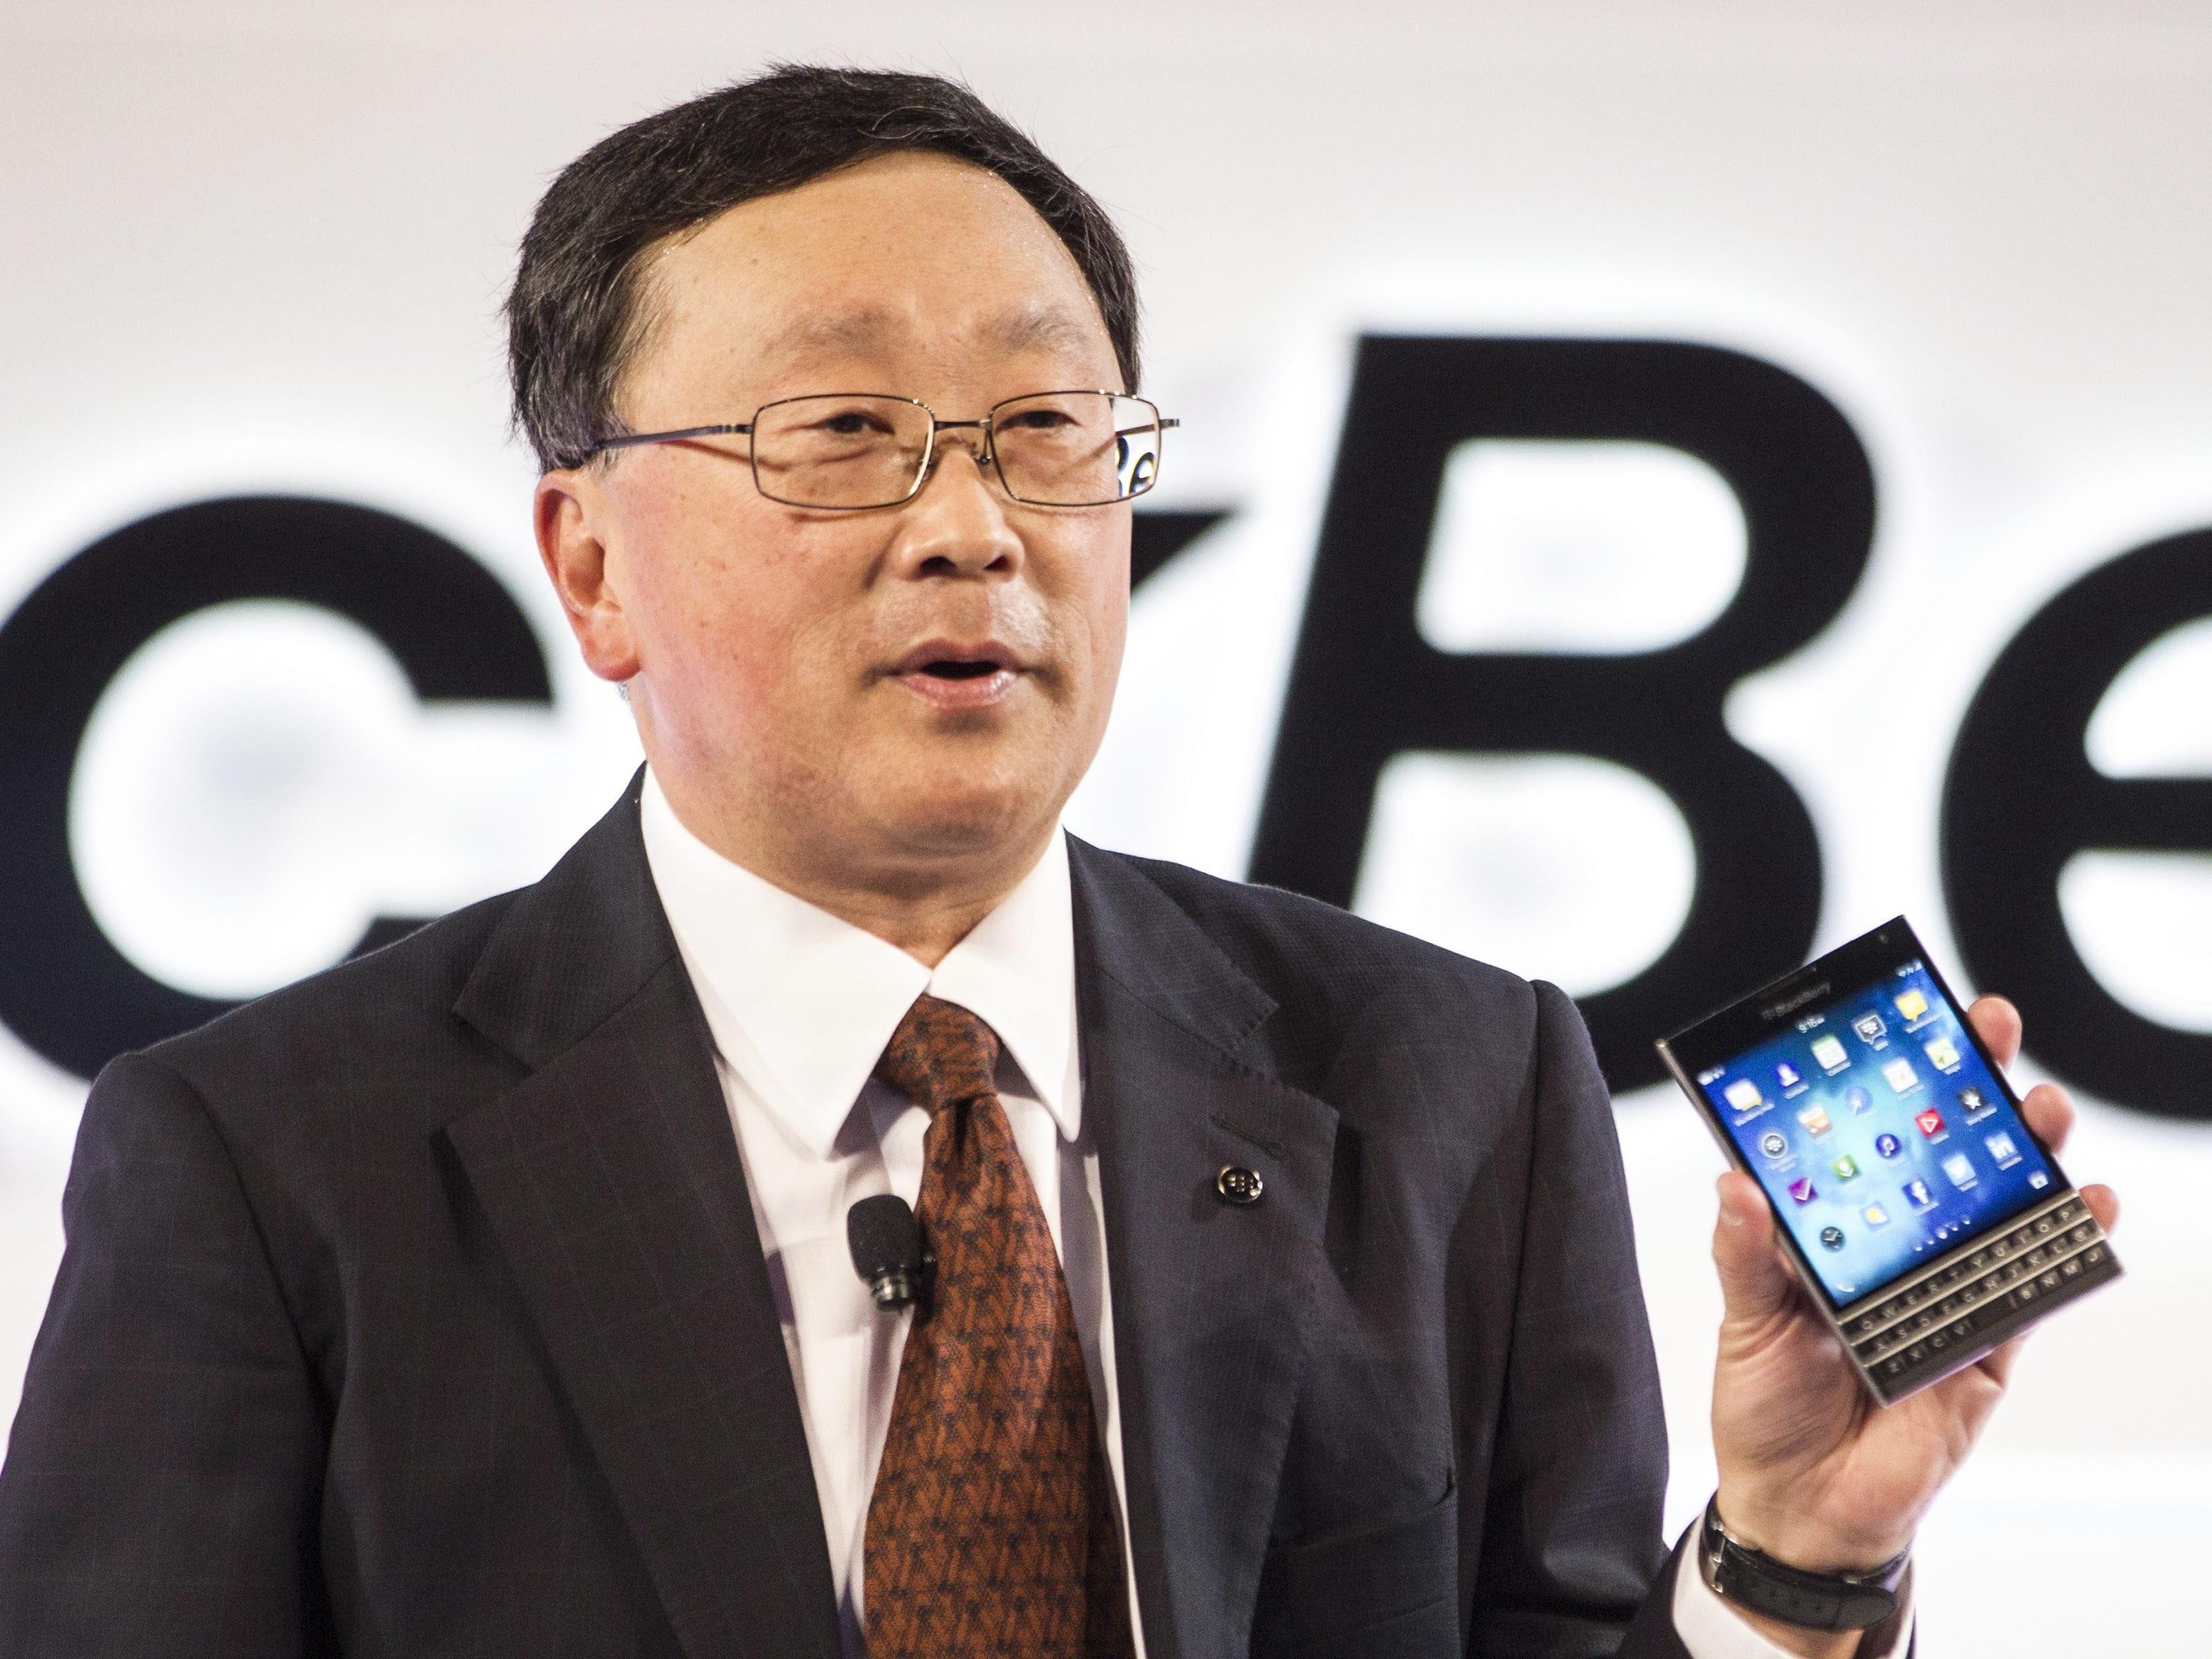 "Und ich?" - Blackberry-Chef John Chen will mehr Apps für seine Geräte, notfalls per Gesetz.